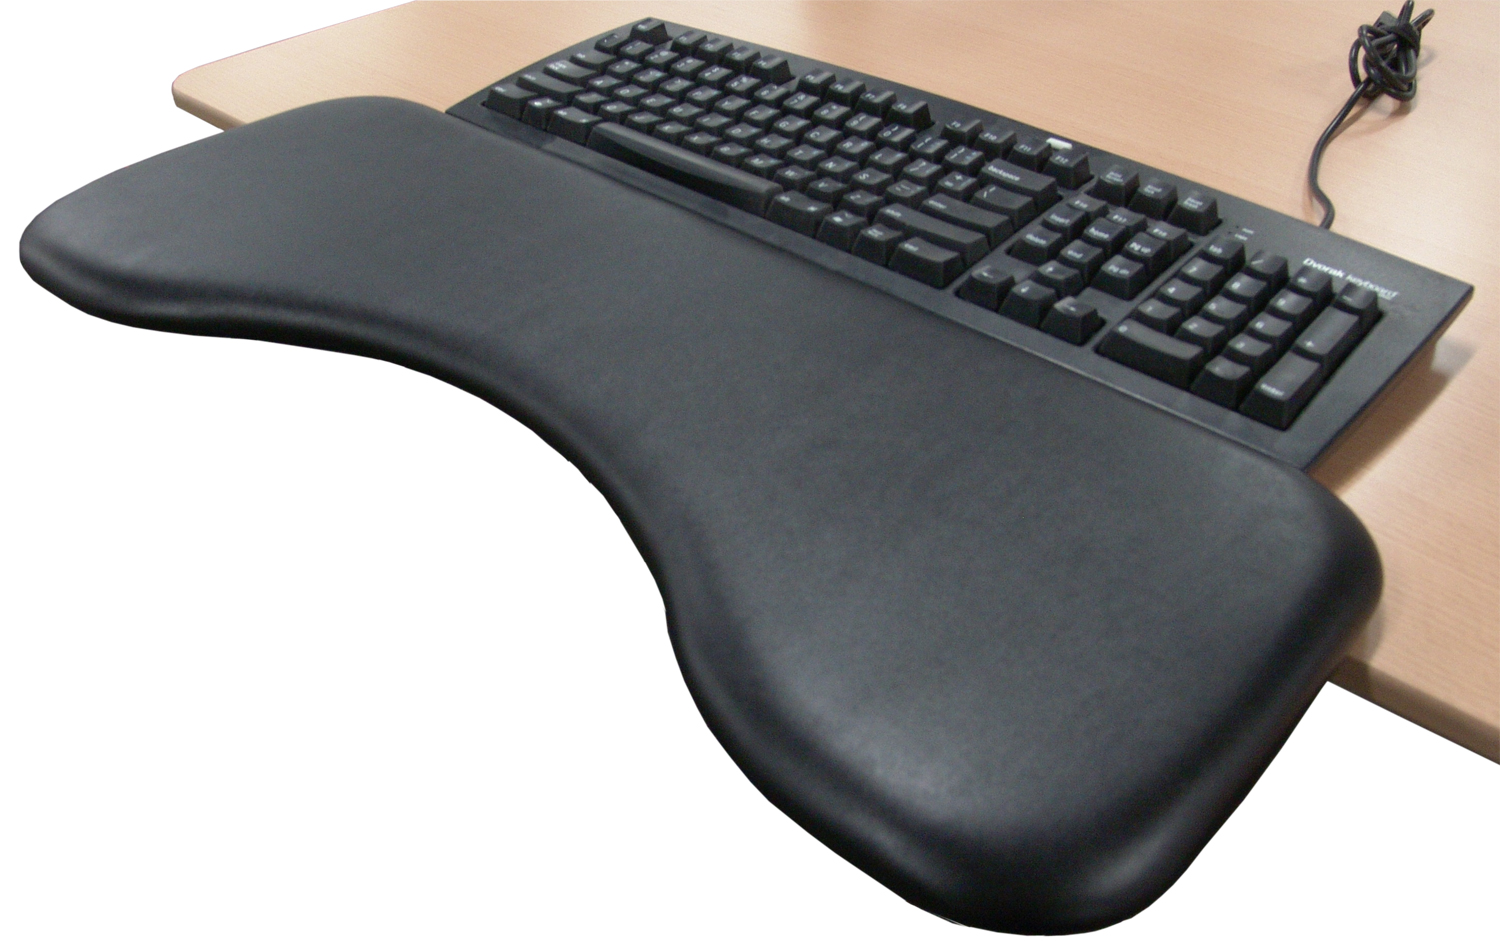 Posturite Keyboard Rest by Posturite : ErgoCanada - Detailed